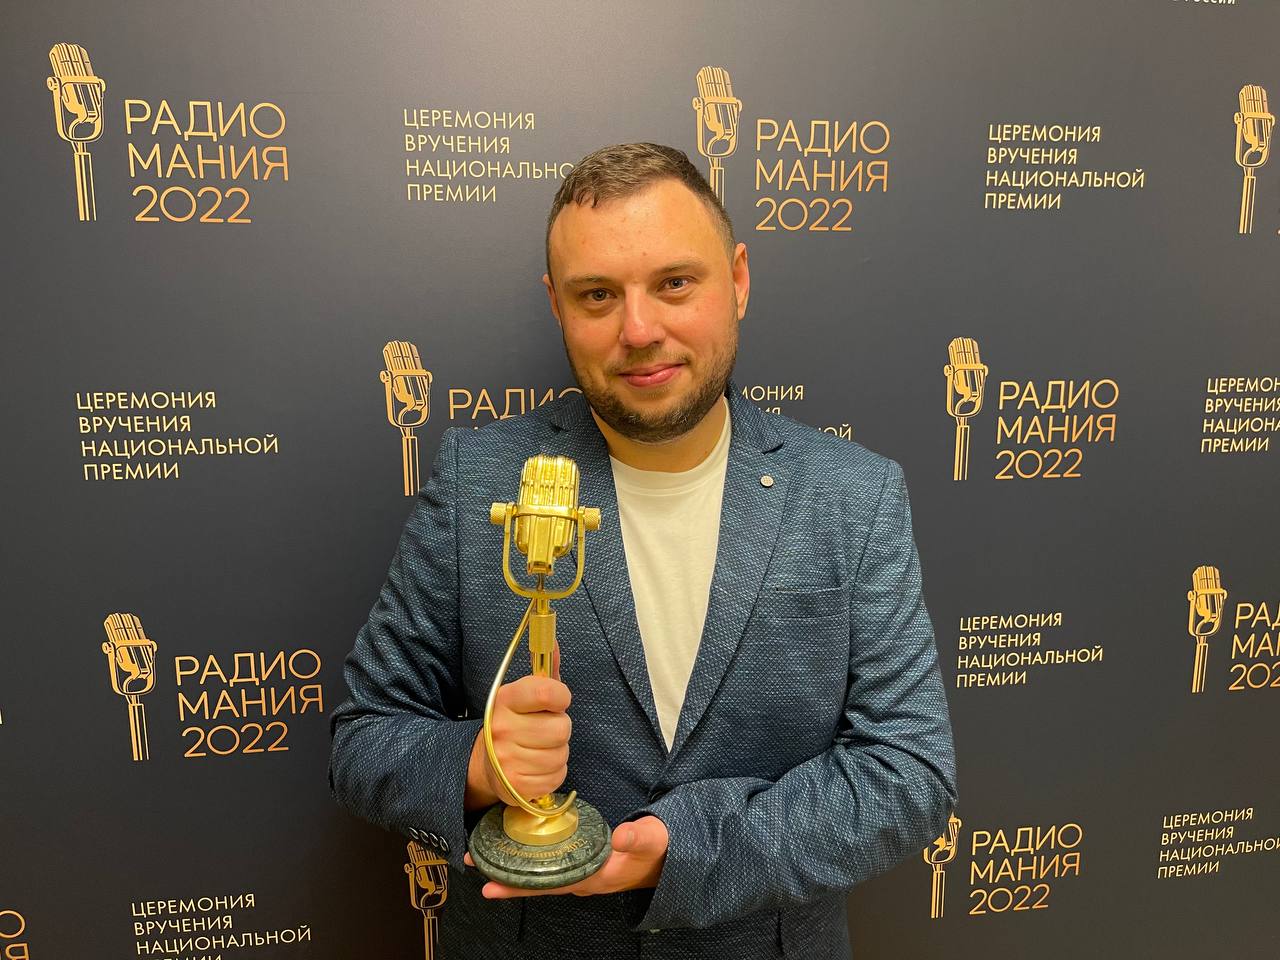 Тульский радиоведущий получил премию "Радиомания-2022"